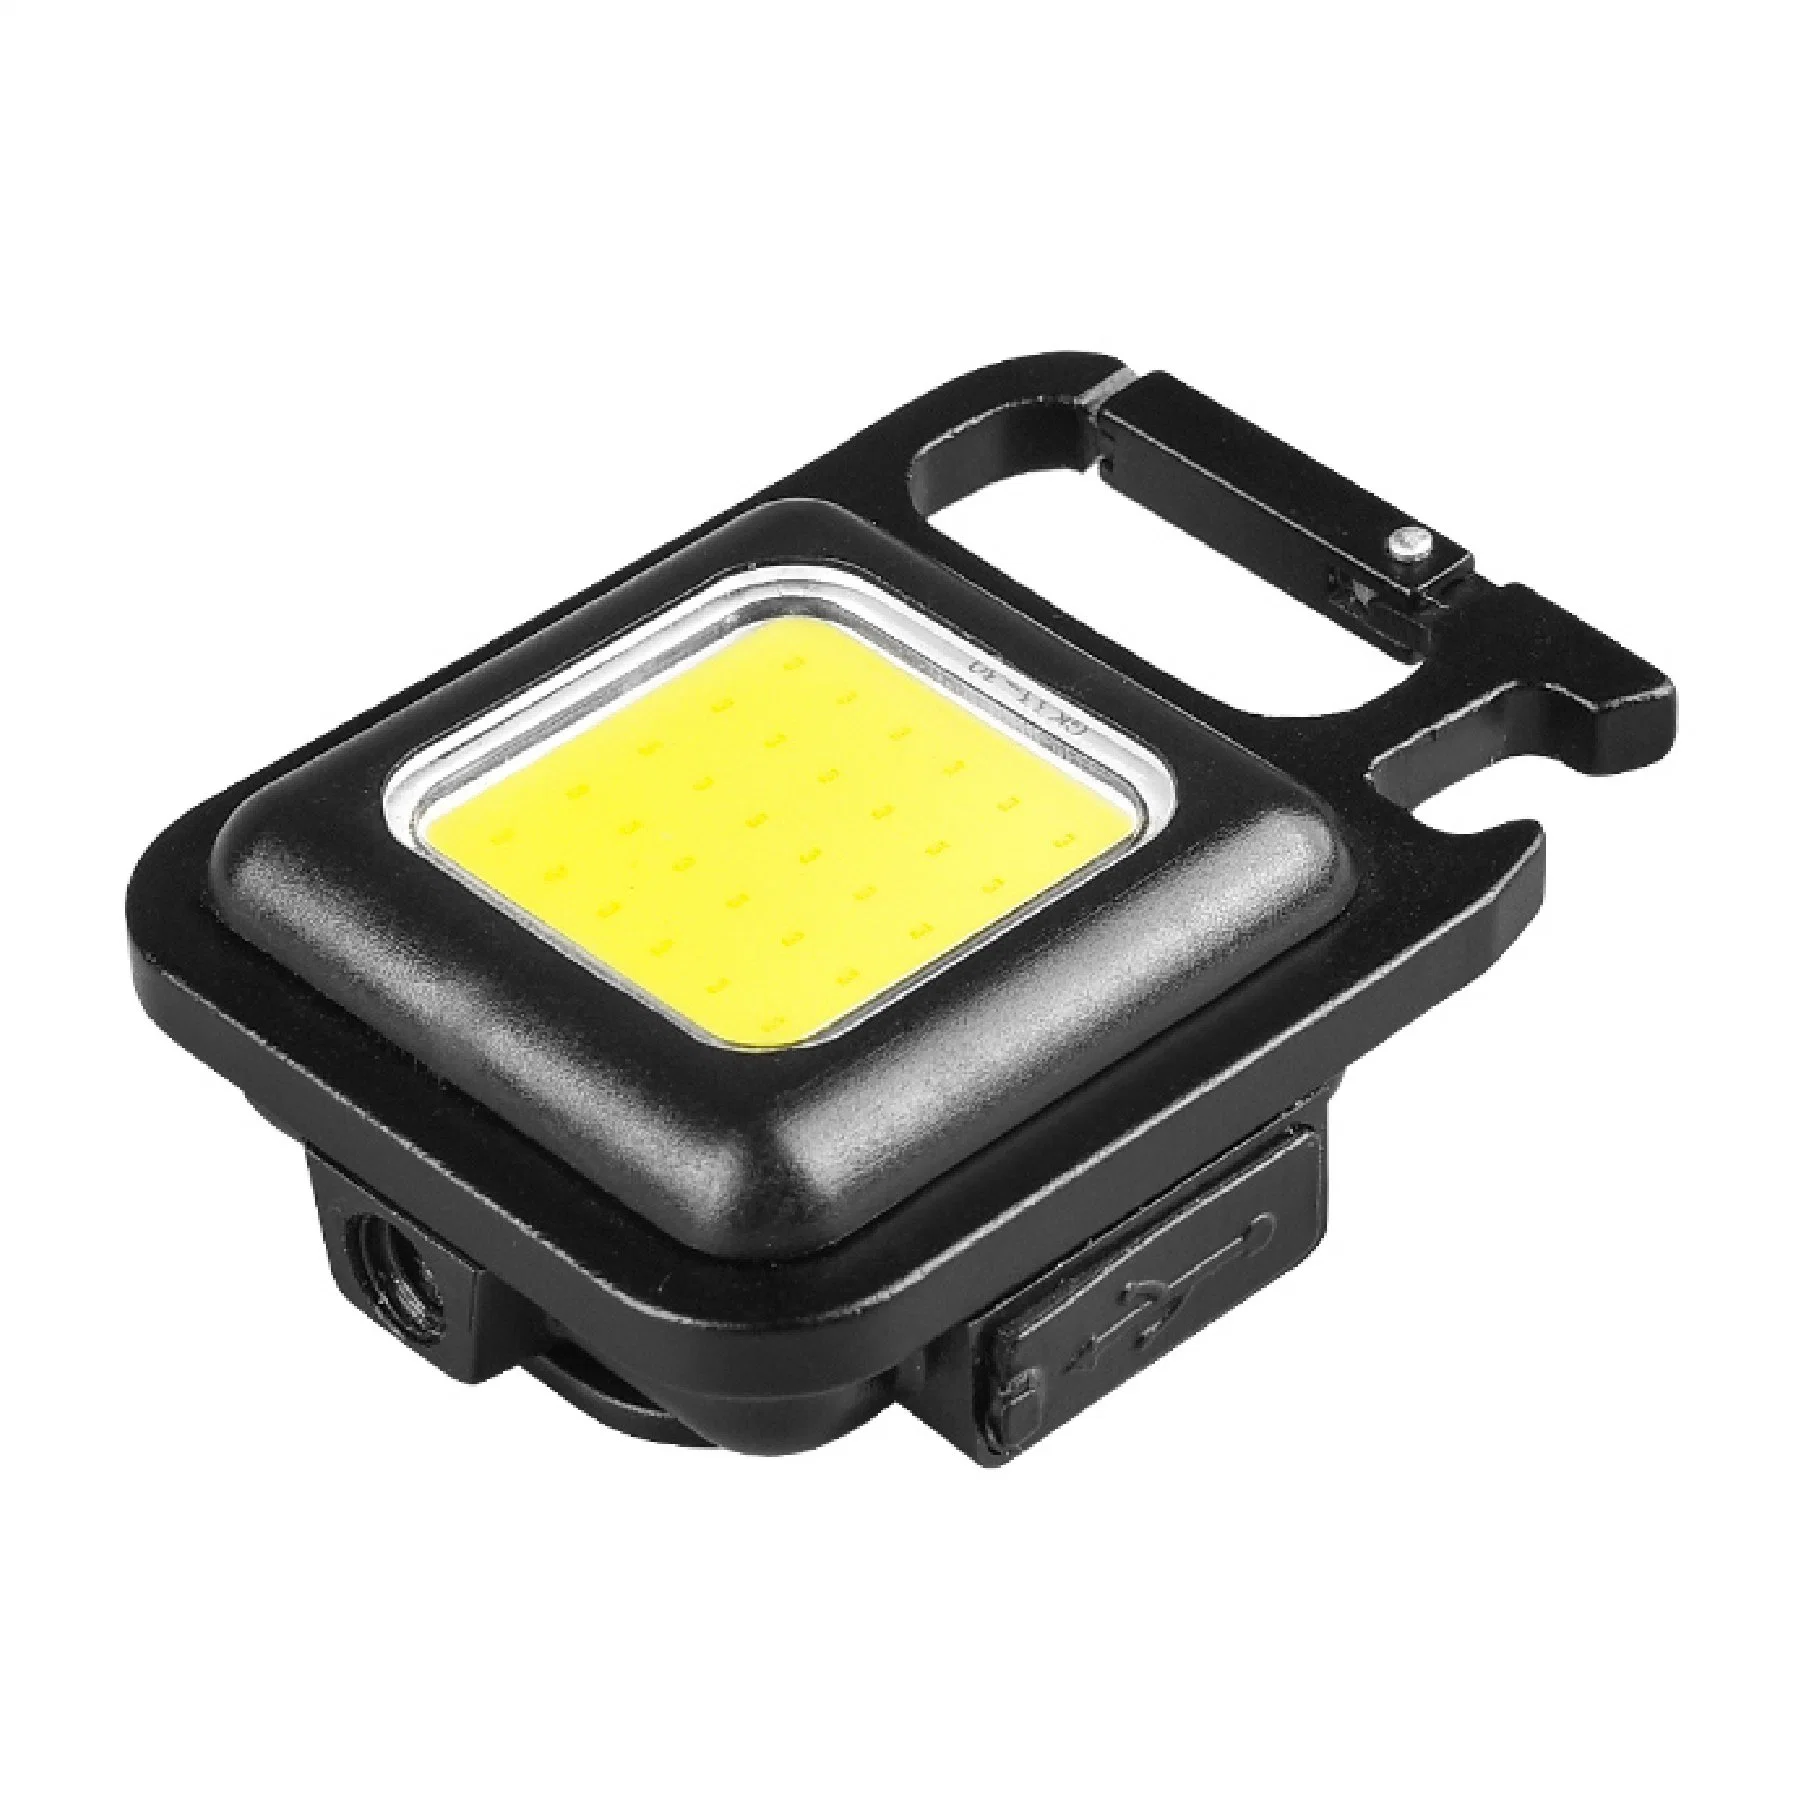 Lanterna recarregável LED USB mini portátil de 3 modos de luz brilhante Luz de trabalho luzes de iluminação de bolso pequenas luzes de campismo luz da porta-chaves